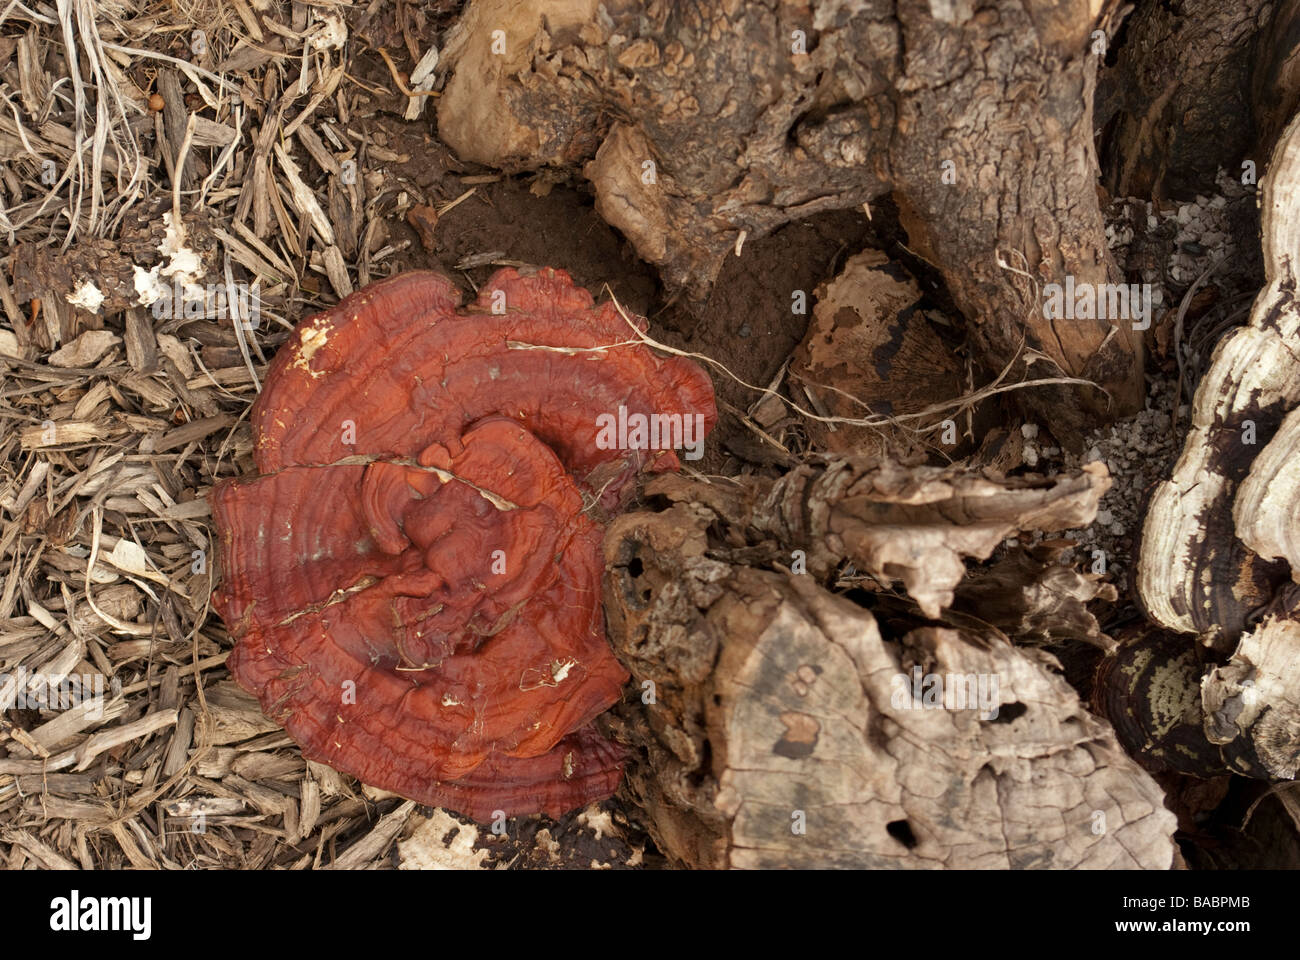 Un champignon rouge se développe à partir de la base d'un moignon pourri Banque D'Images